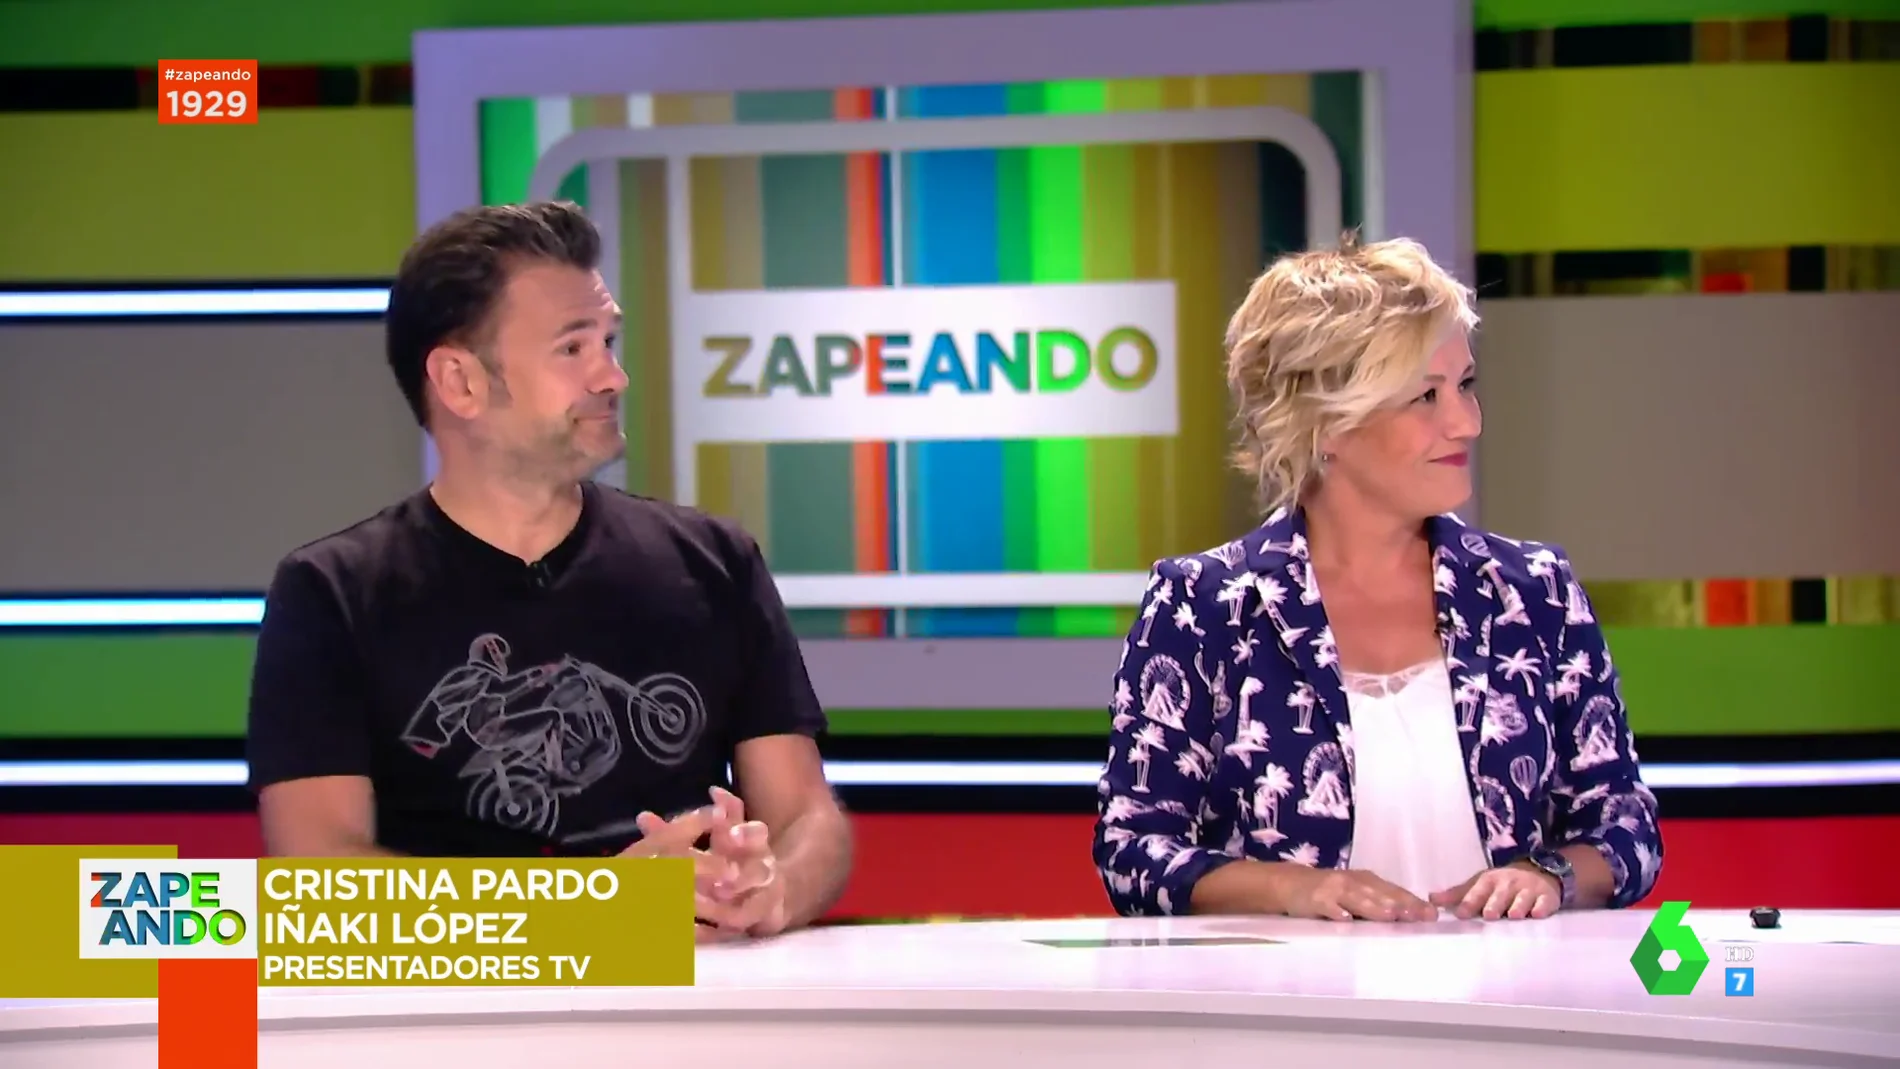 La confesión de Cristina Pardo sobre su icónico flequillo en Zapeando